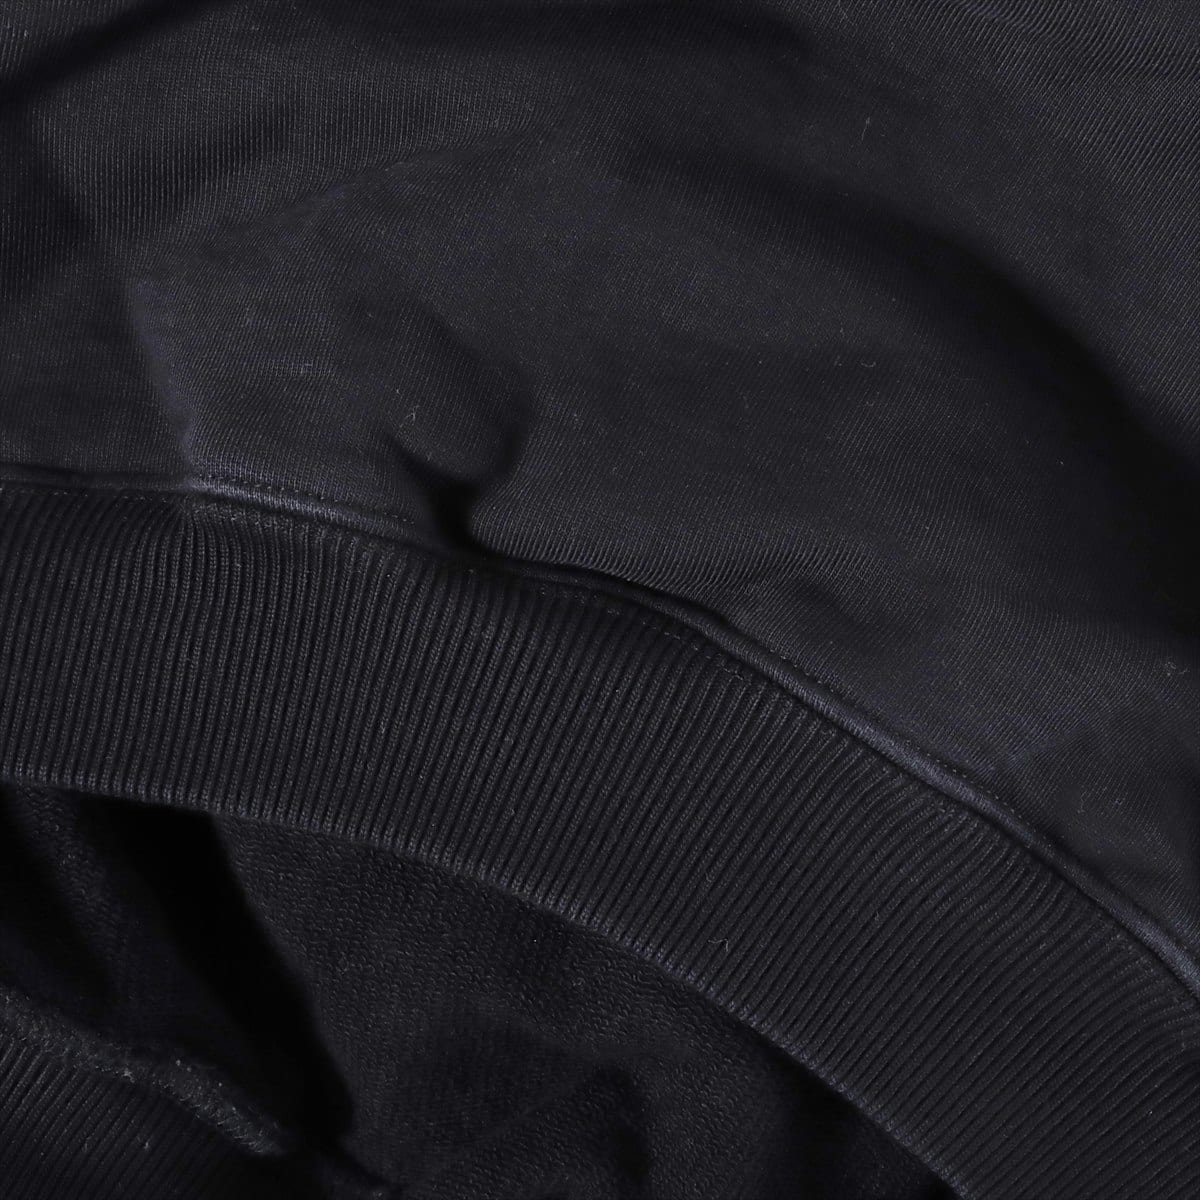 バレンシアガ 18年 コットン パーカー S メンズ ブラック  キャンペーンロゴ